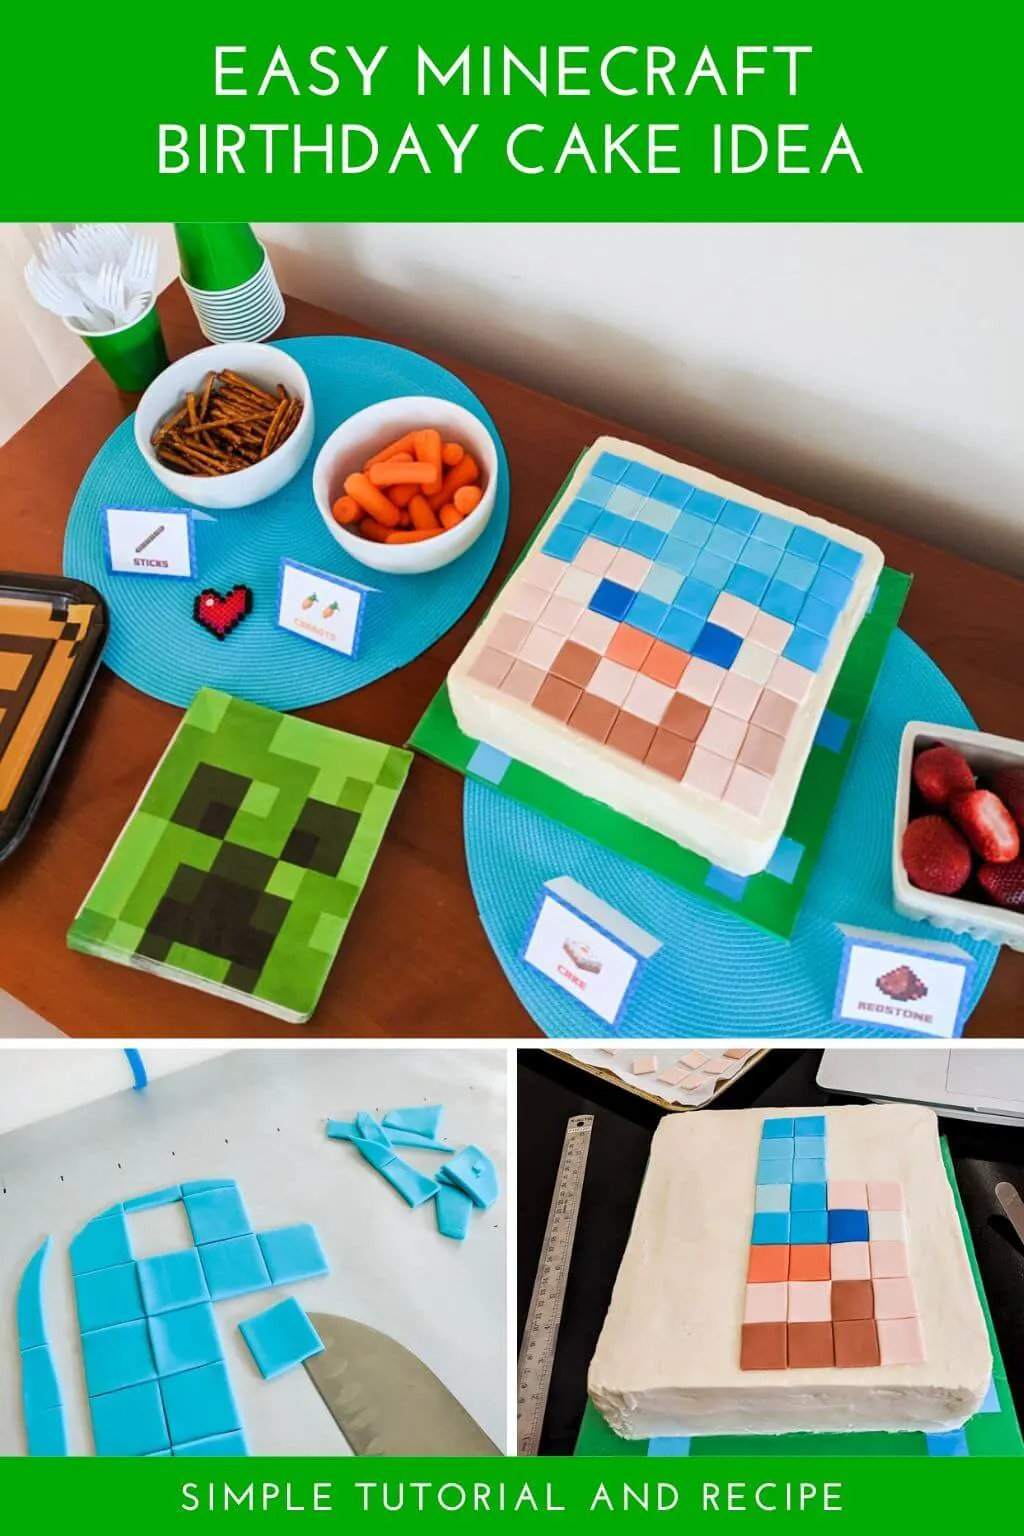 Minecraft birthday cake, celebration cakes | Antonias Cakes